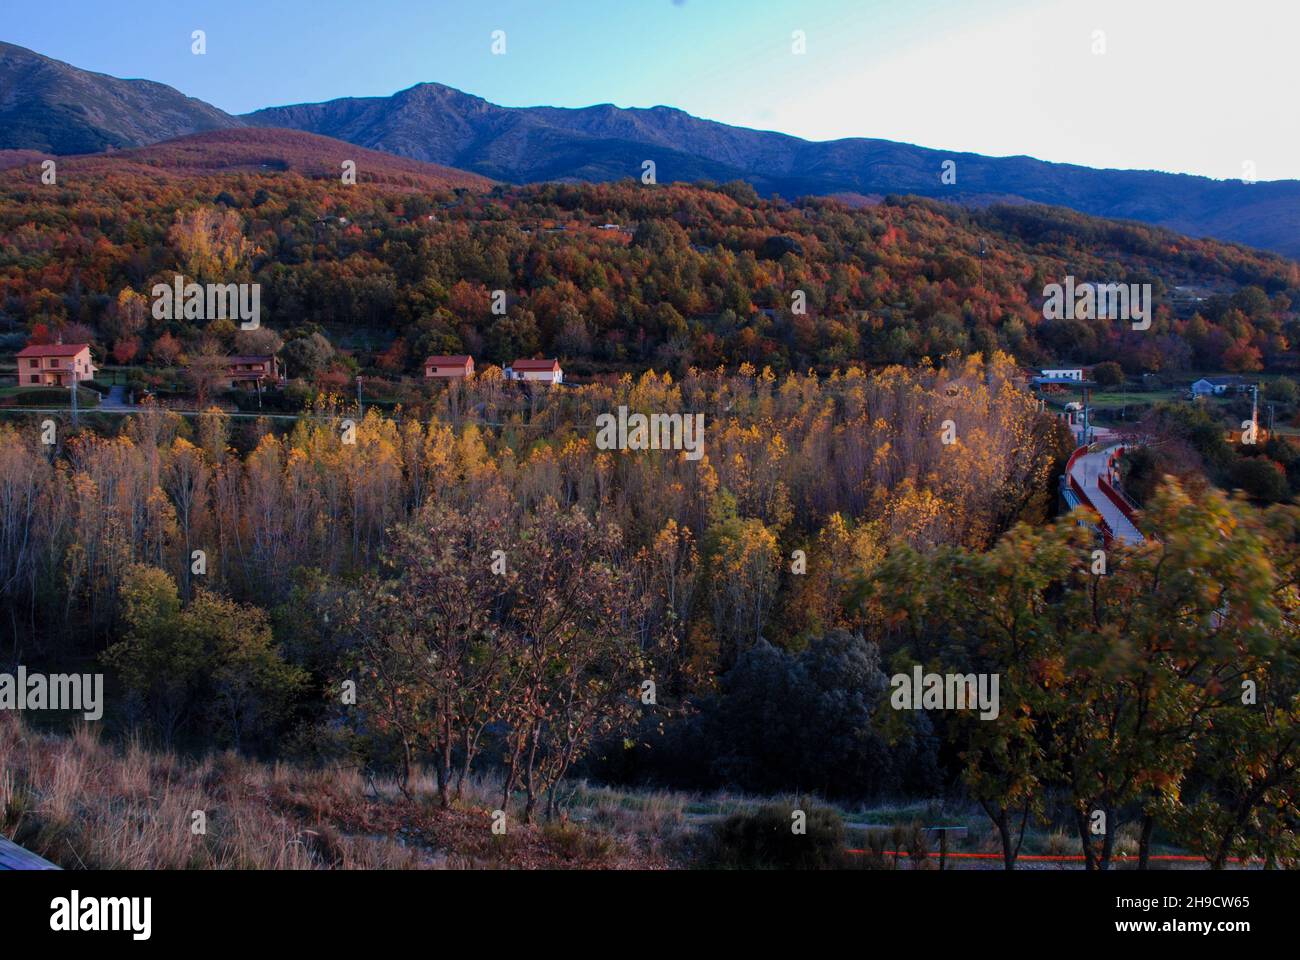 Vue Monte de Hervas via verde via de la Plata automne couleurs ocre jaune vert coucher de soleil Banque D'Images